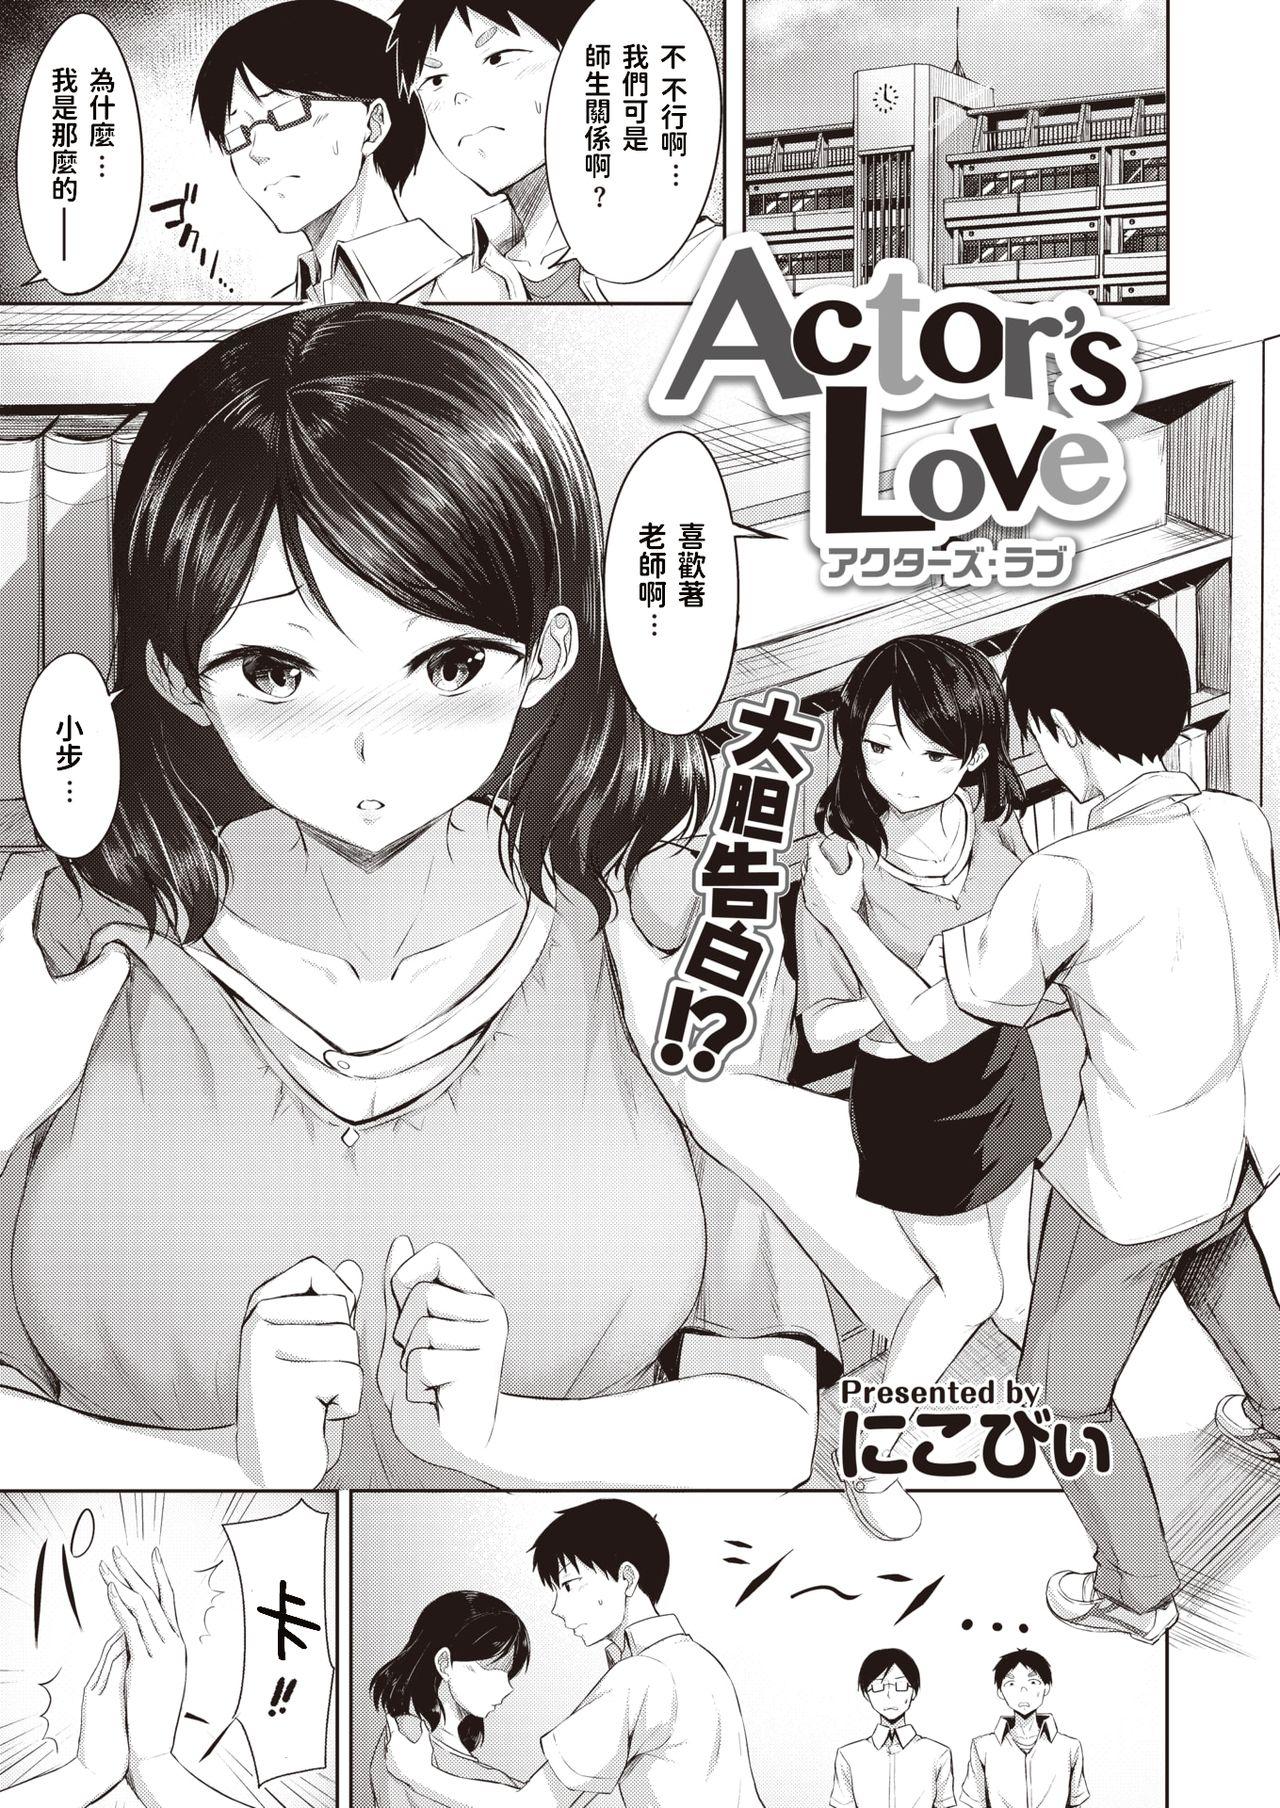 Actor's Love 0